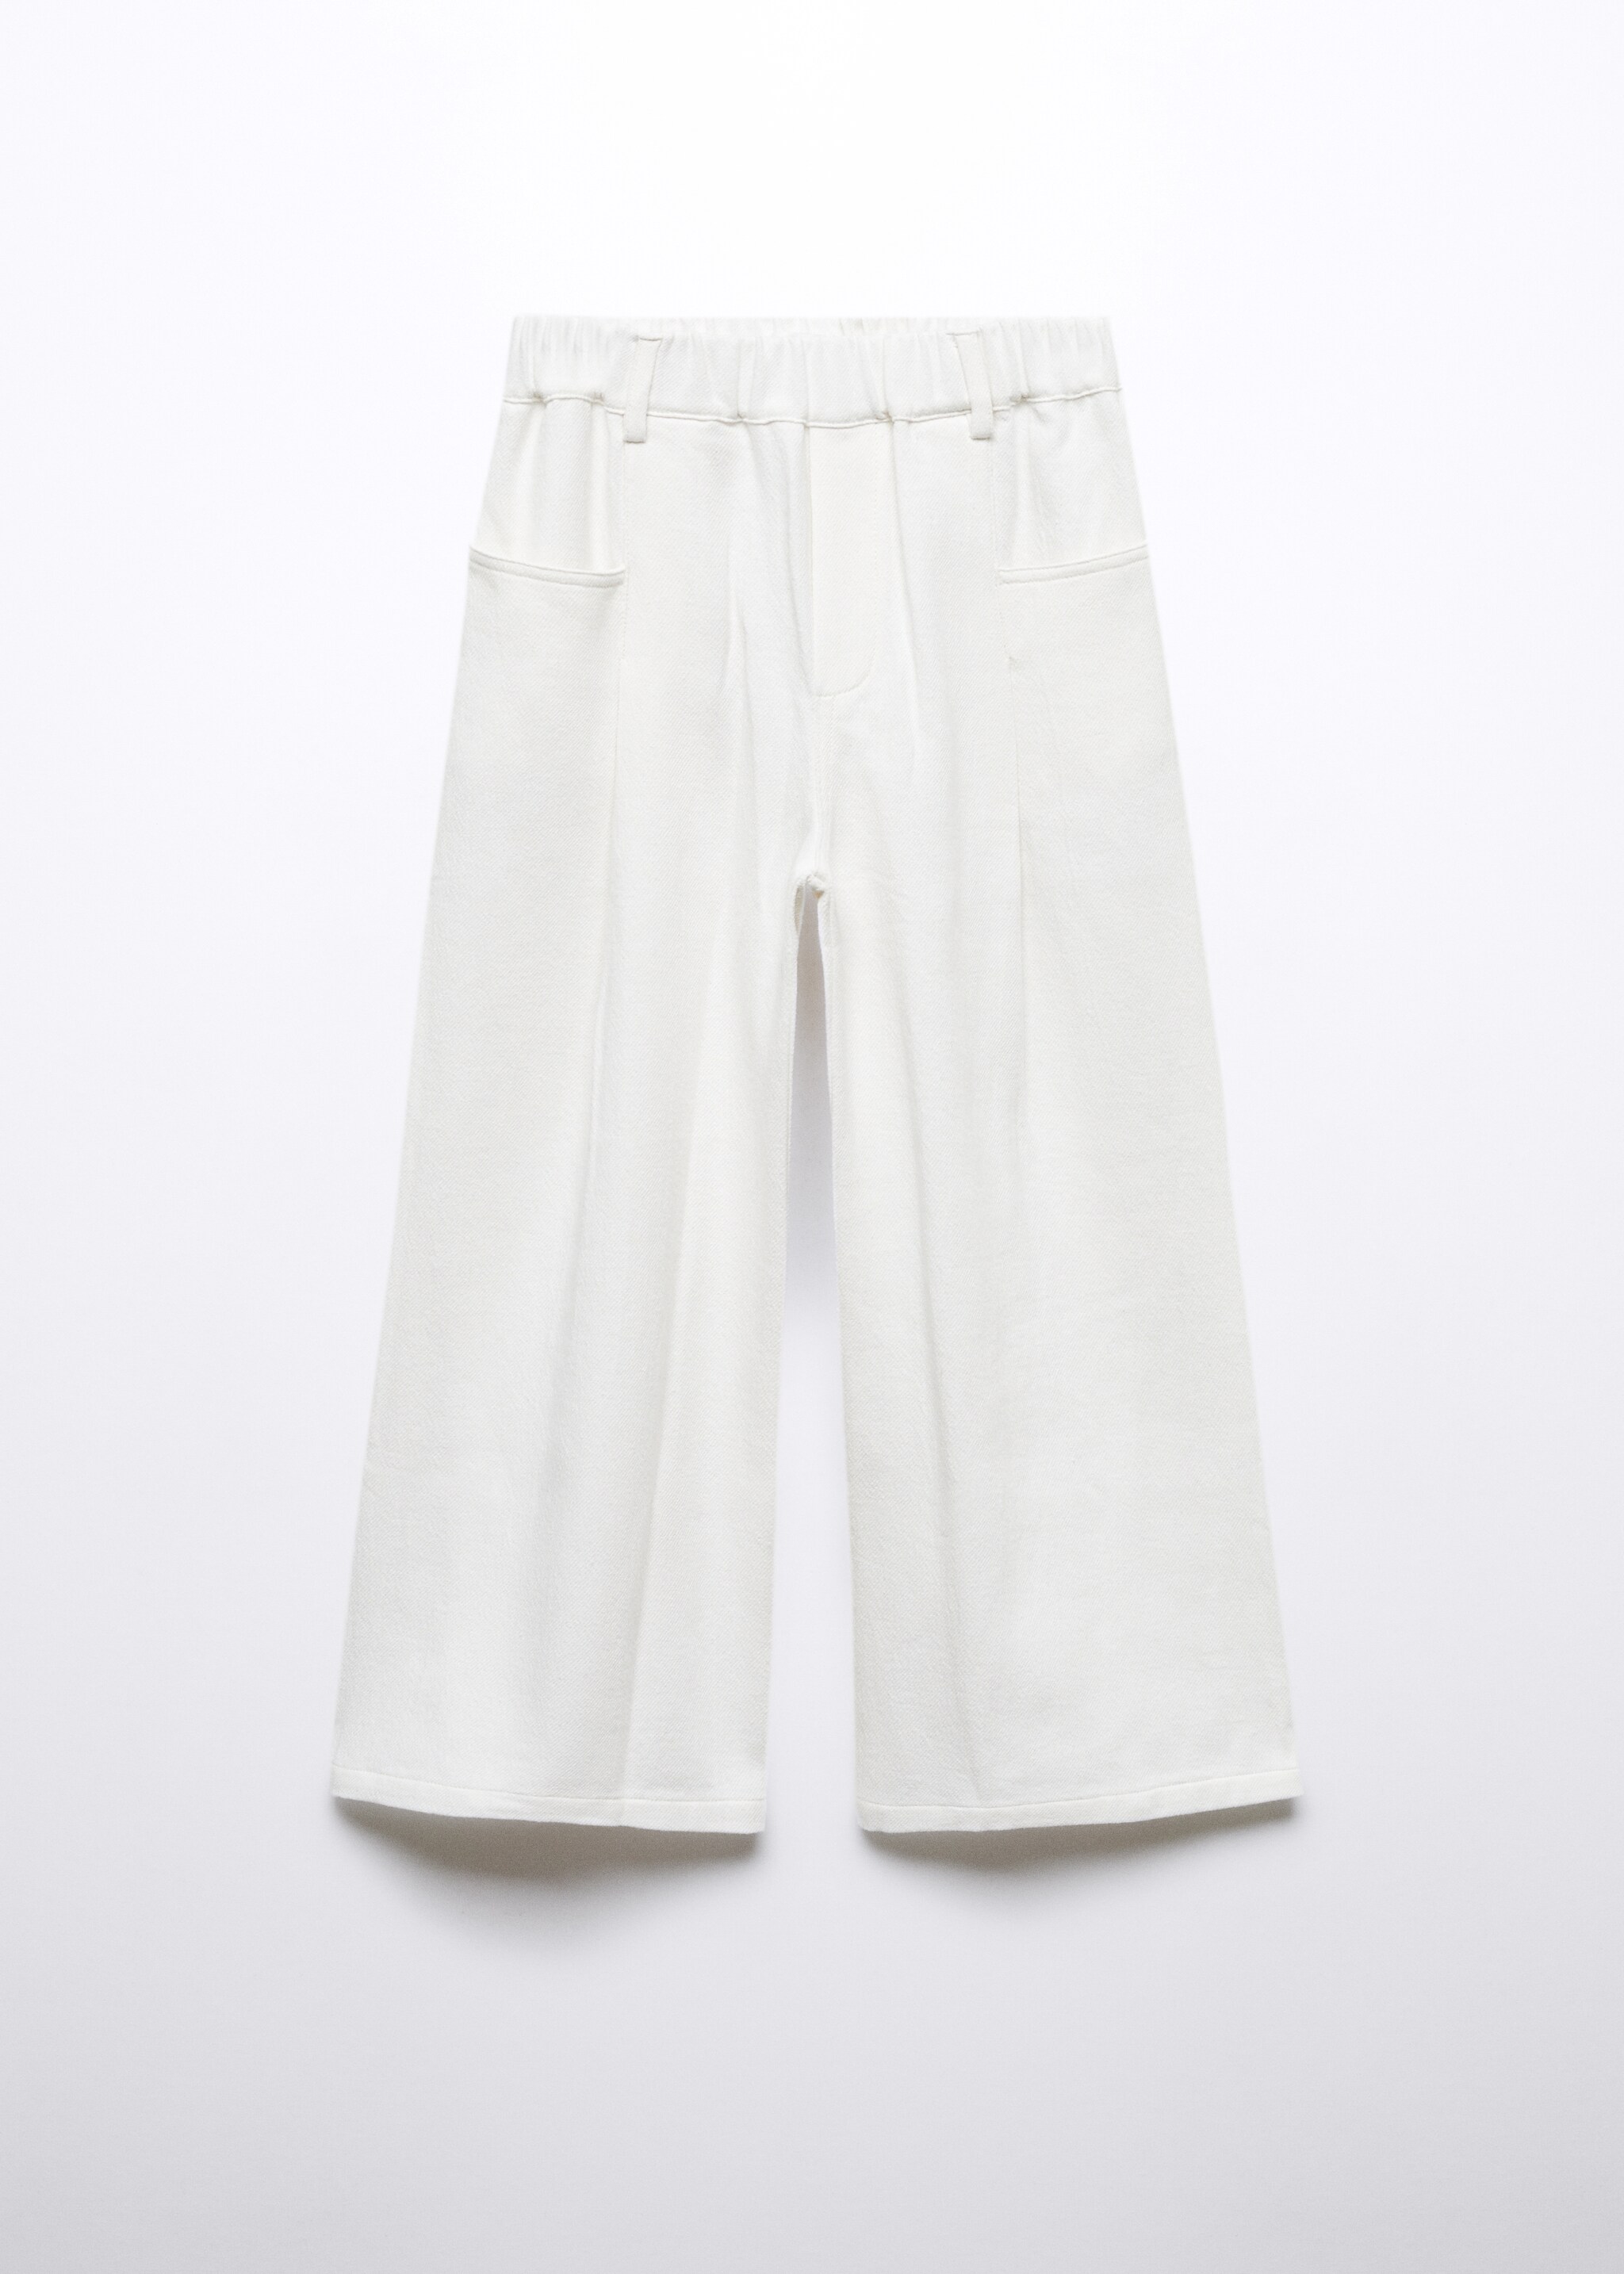 Pantalón elástico algodón - Artículo sin modelo